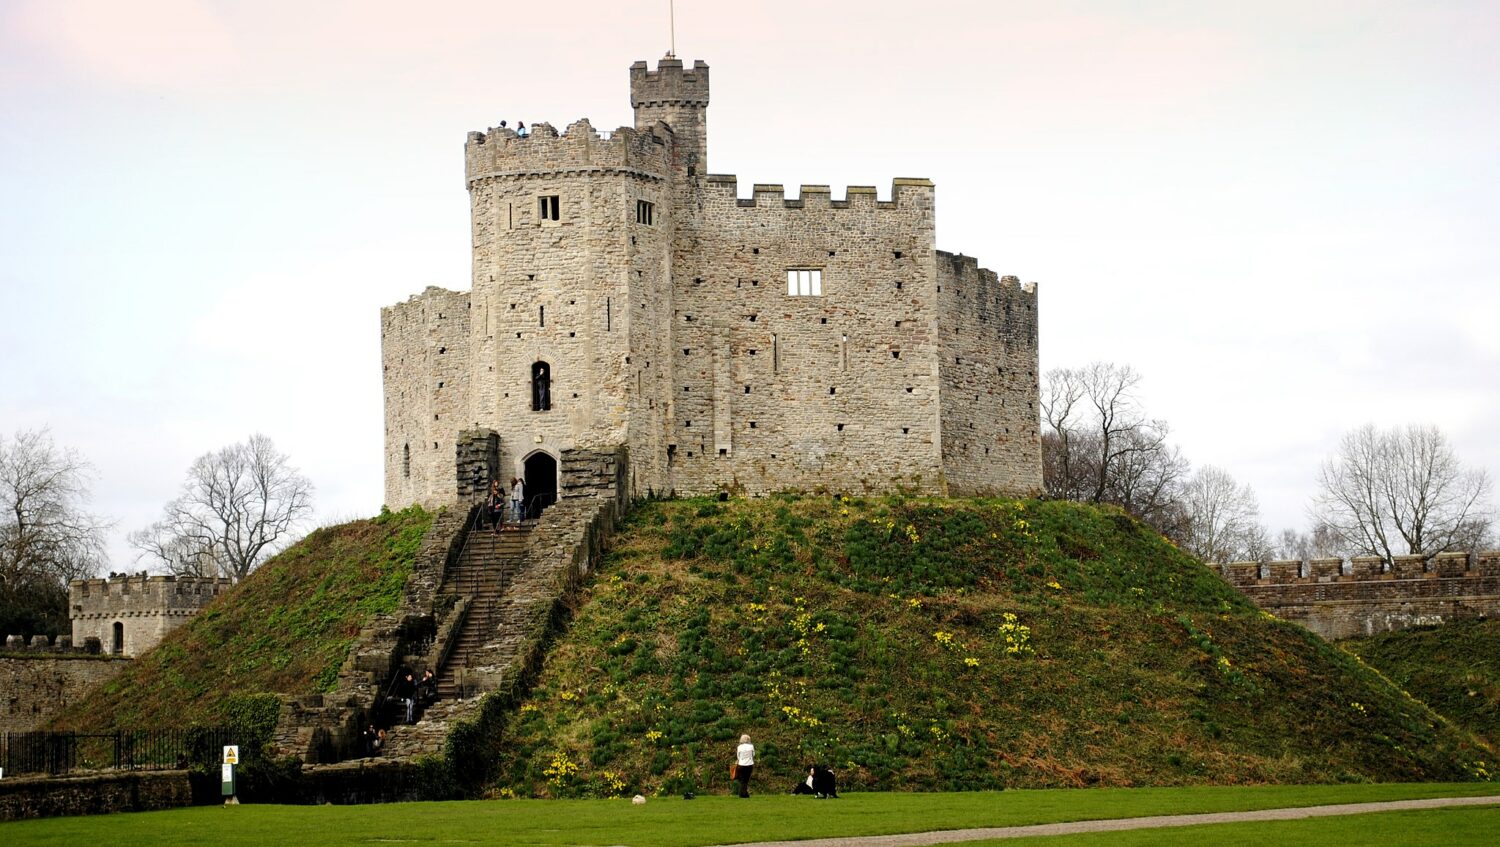 vista do Castelo Cardiff no País de Gales